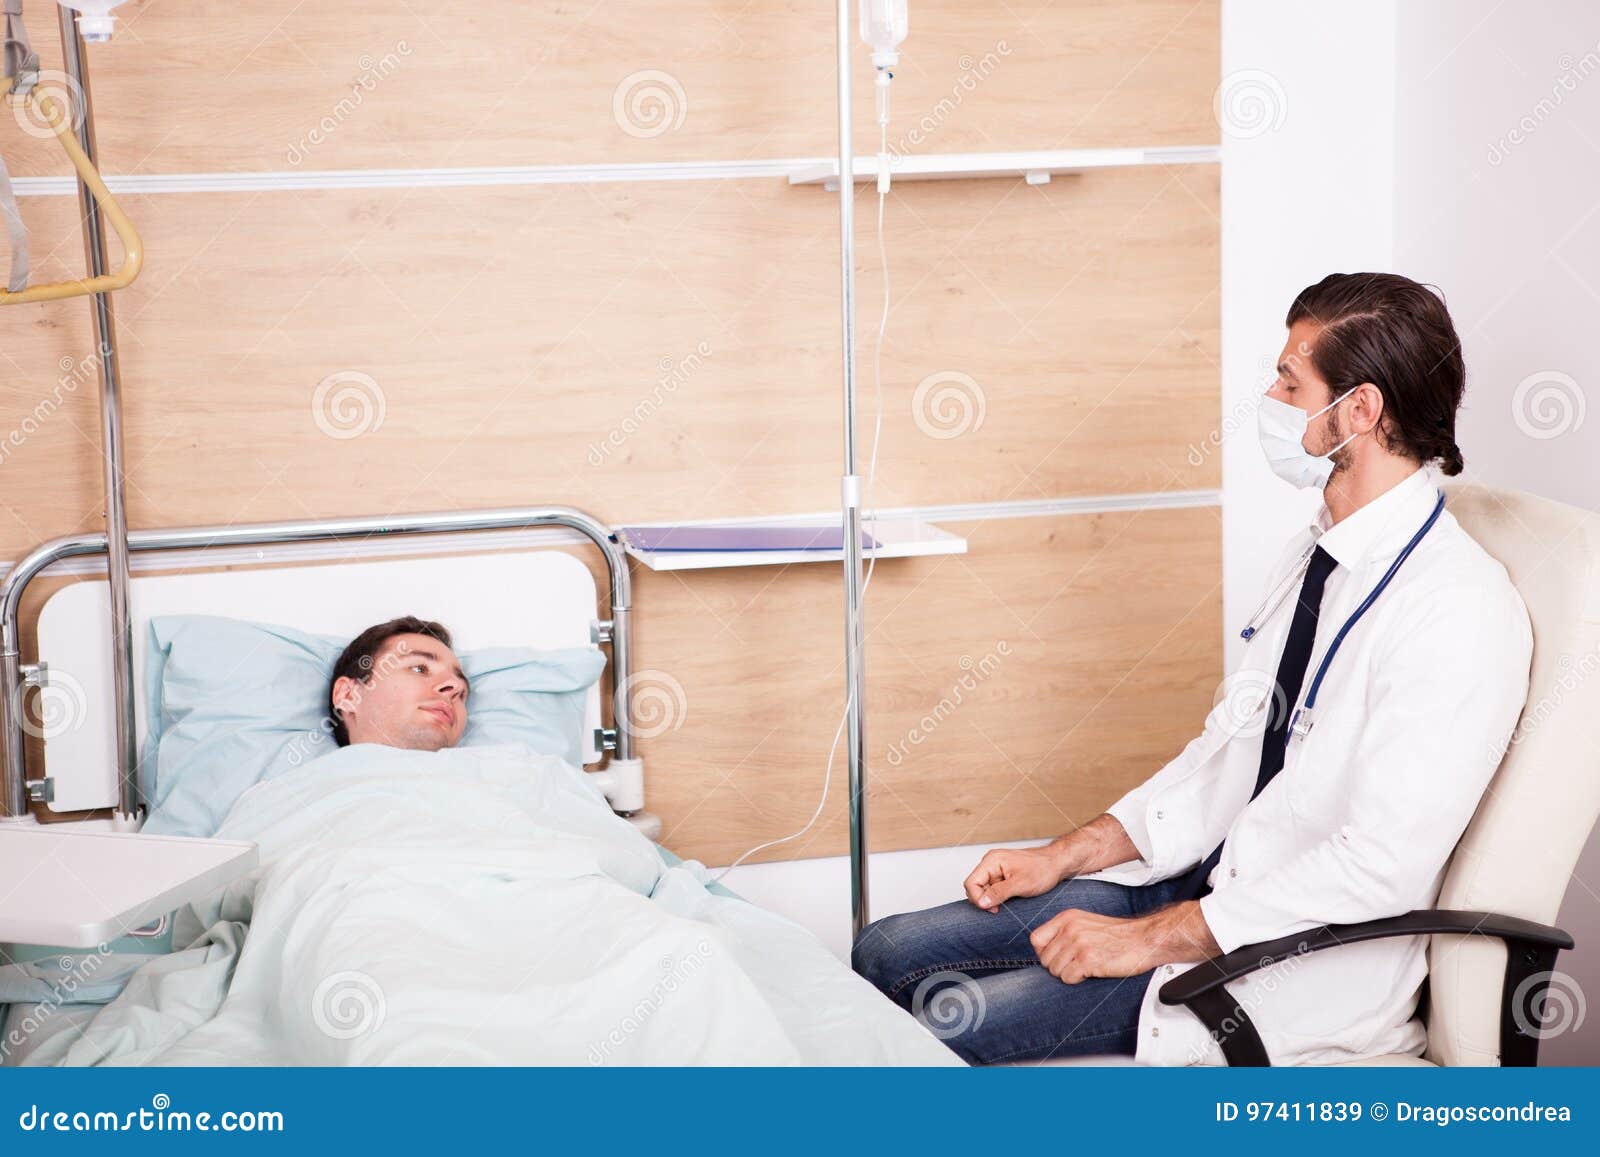 Кровати после операций на позвоночнике. Пациент после операции в палате. Пациент лежит. Пациент лежит в палате после операции.